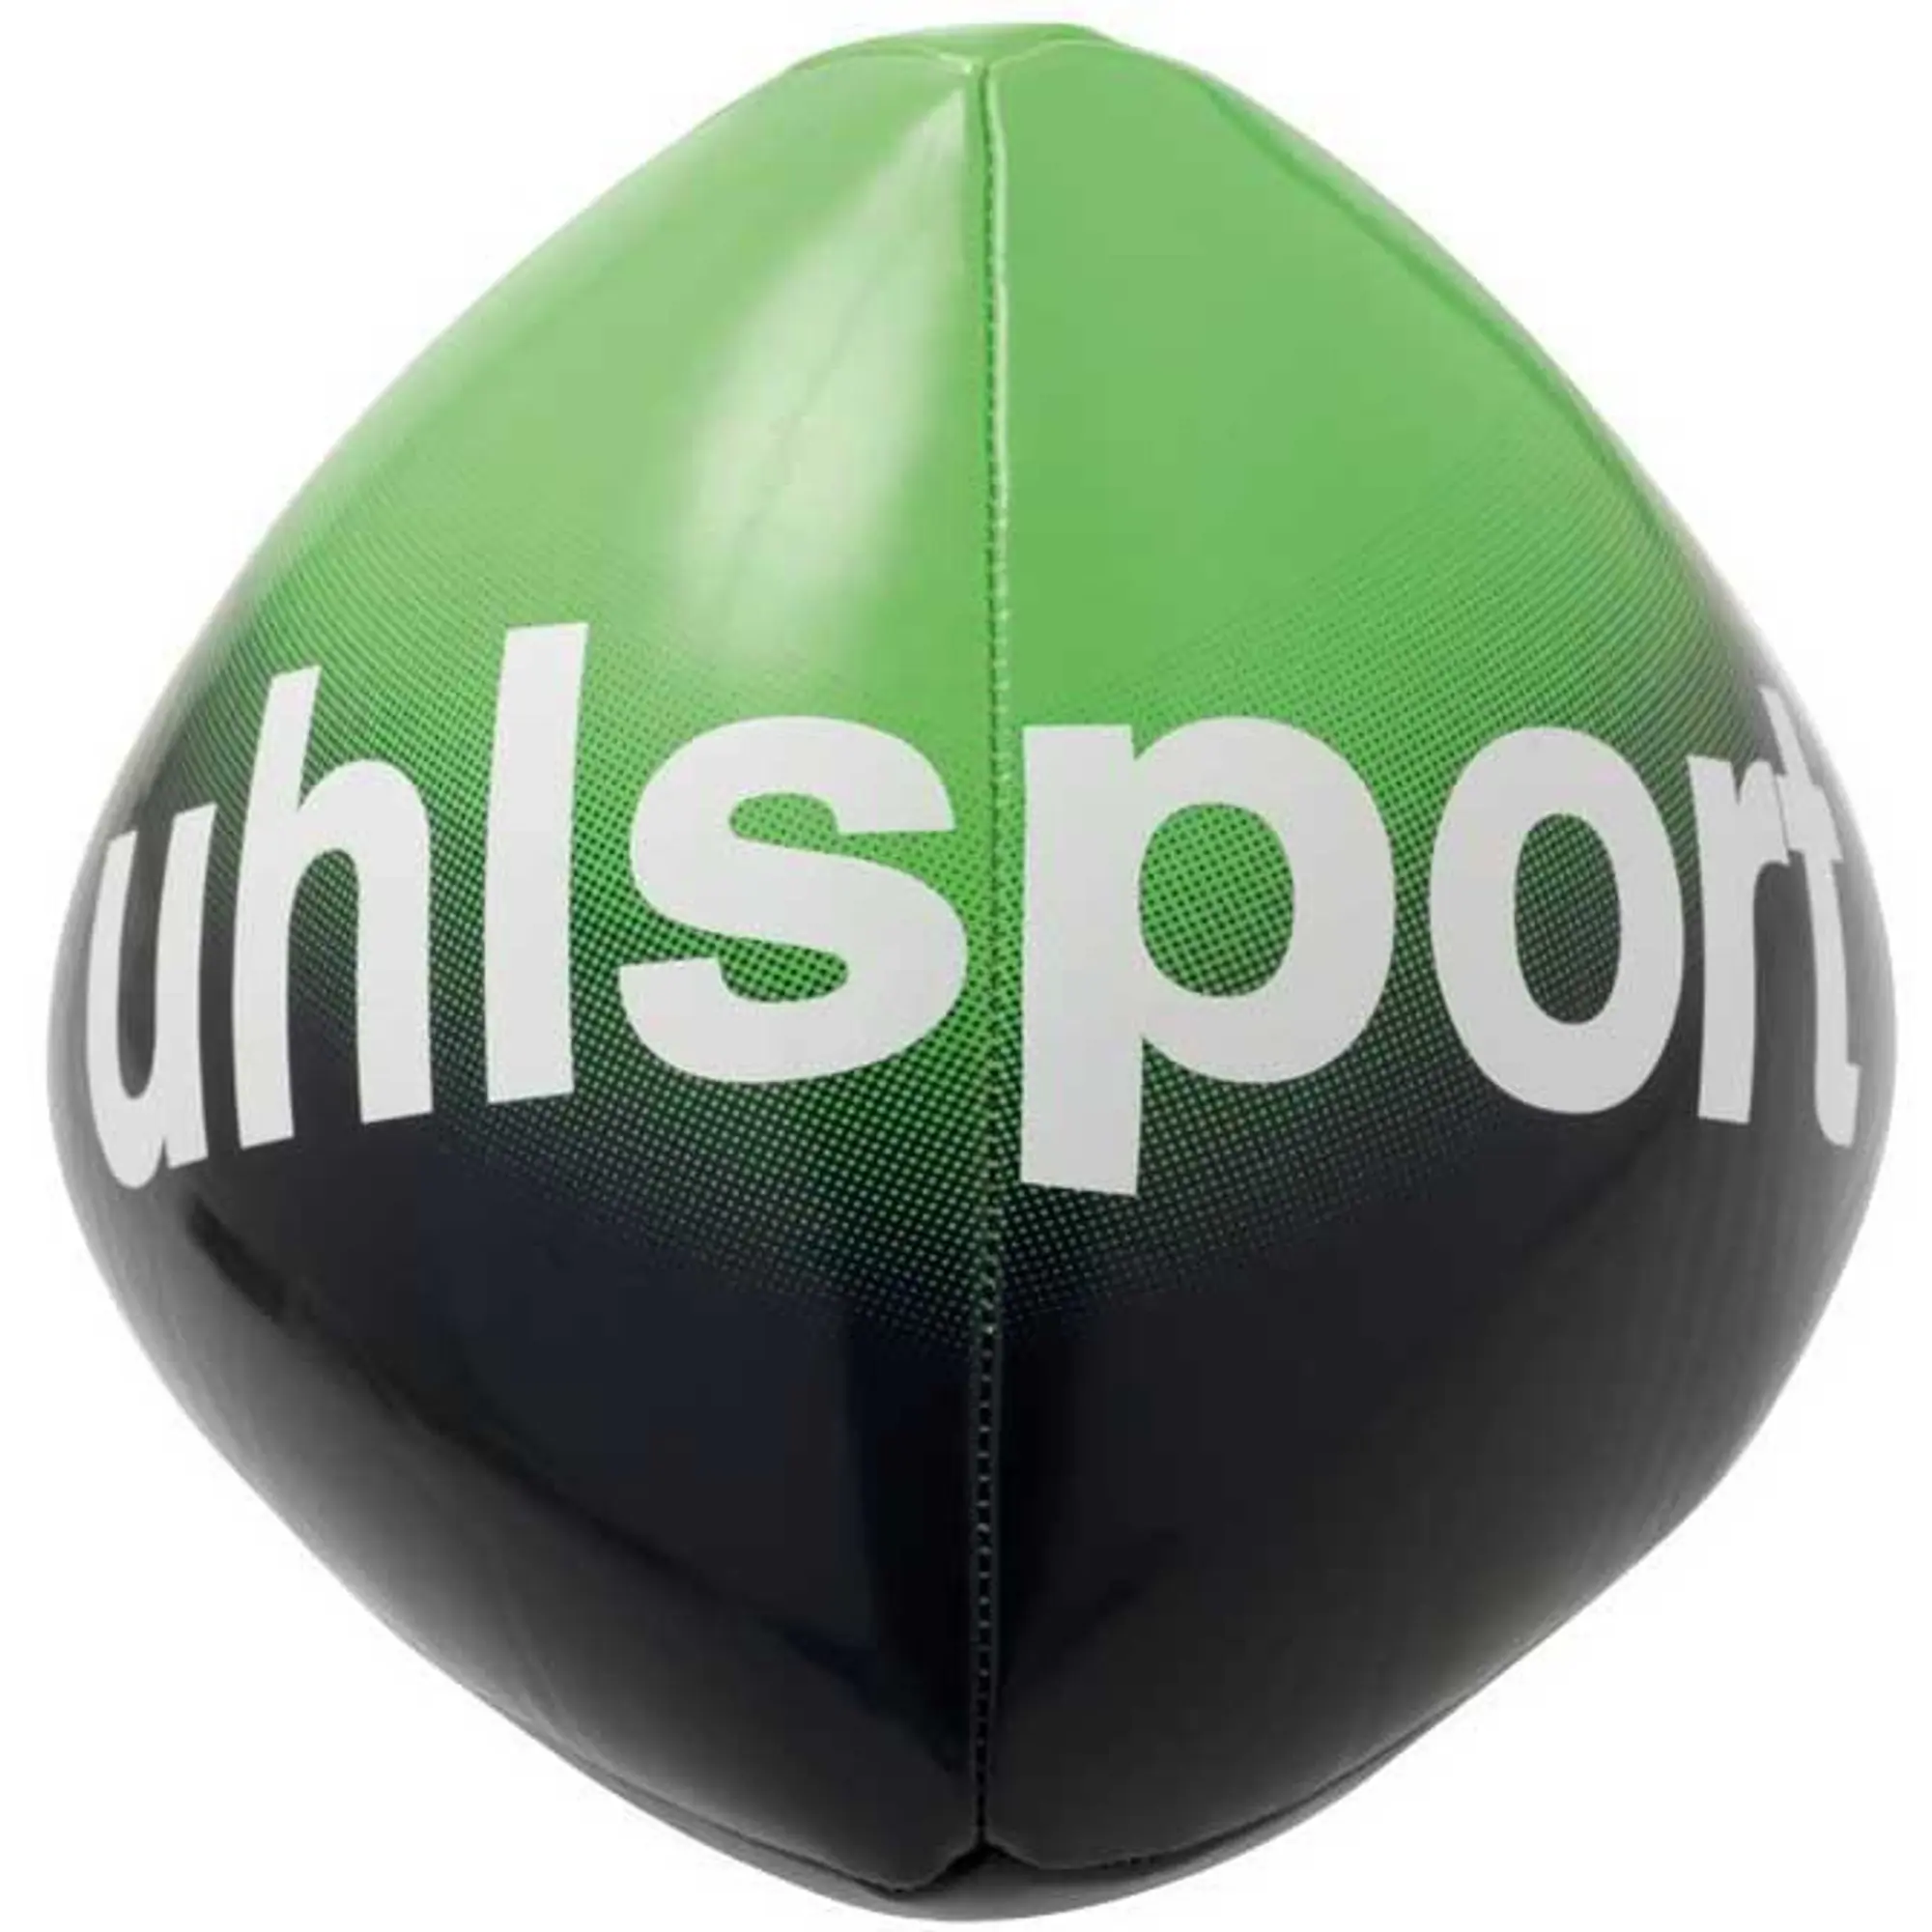 Uhlsport Reflex Football Ball  - Green